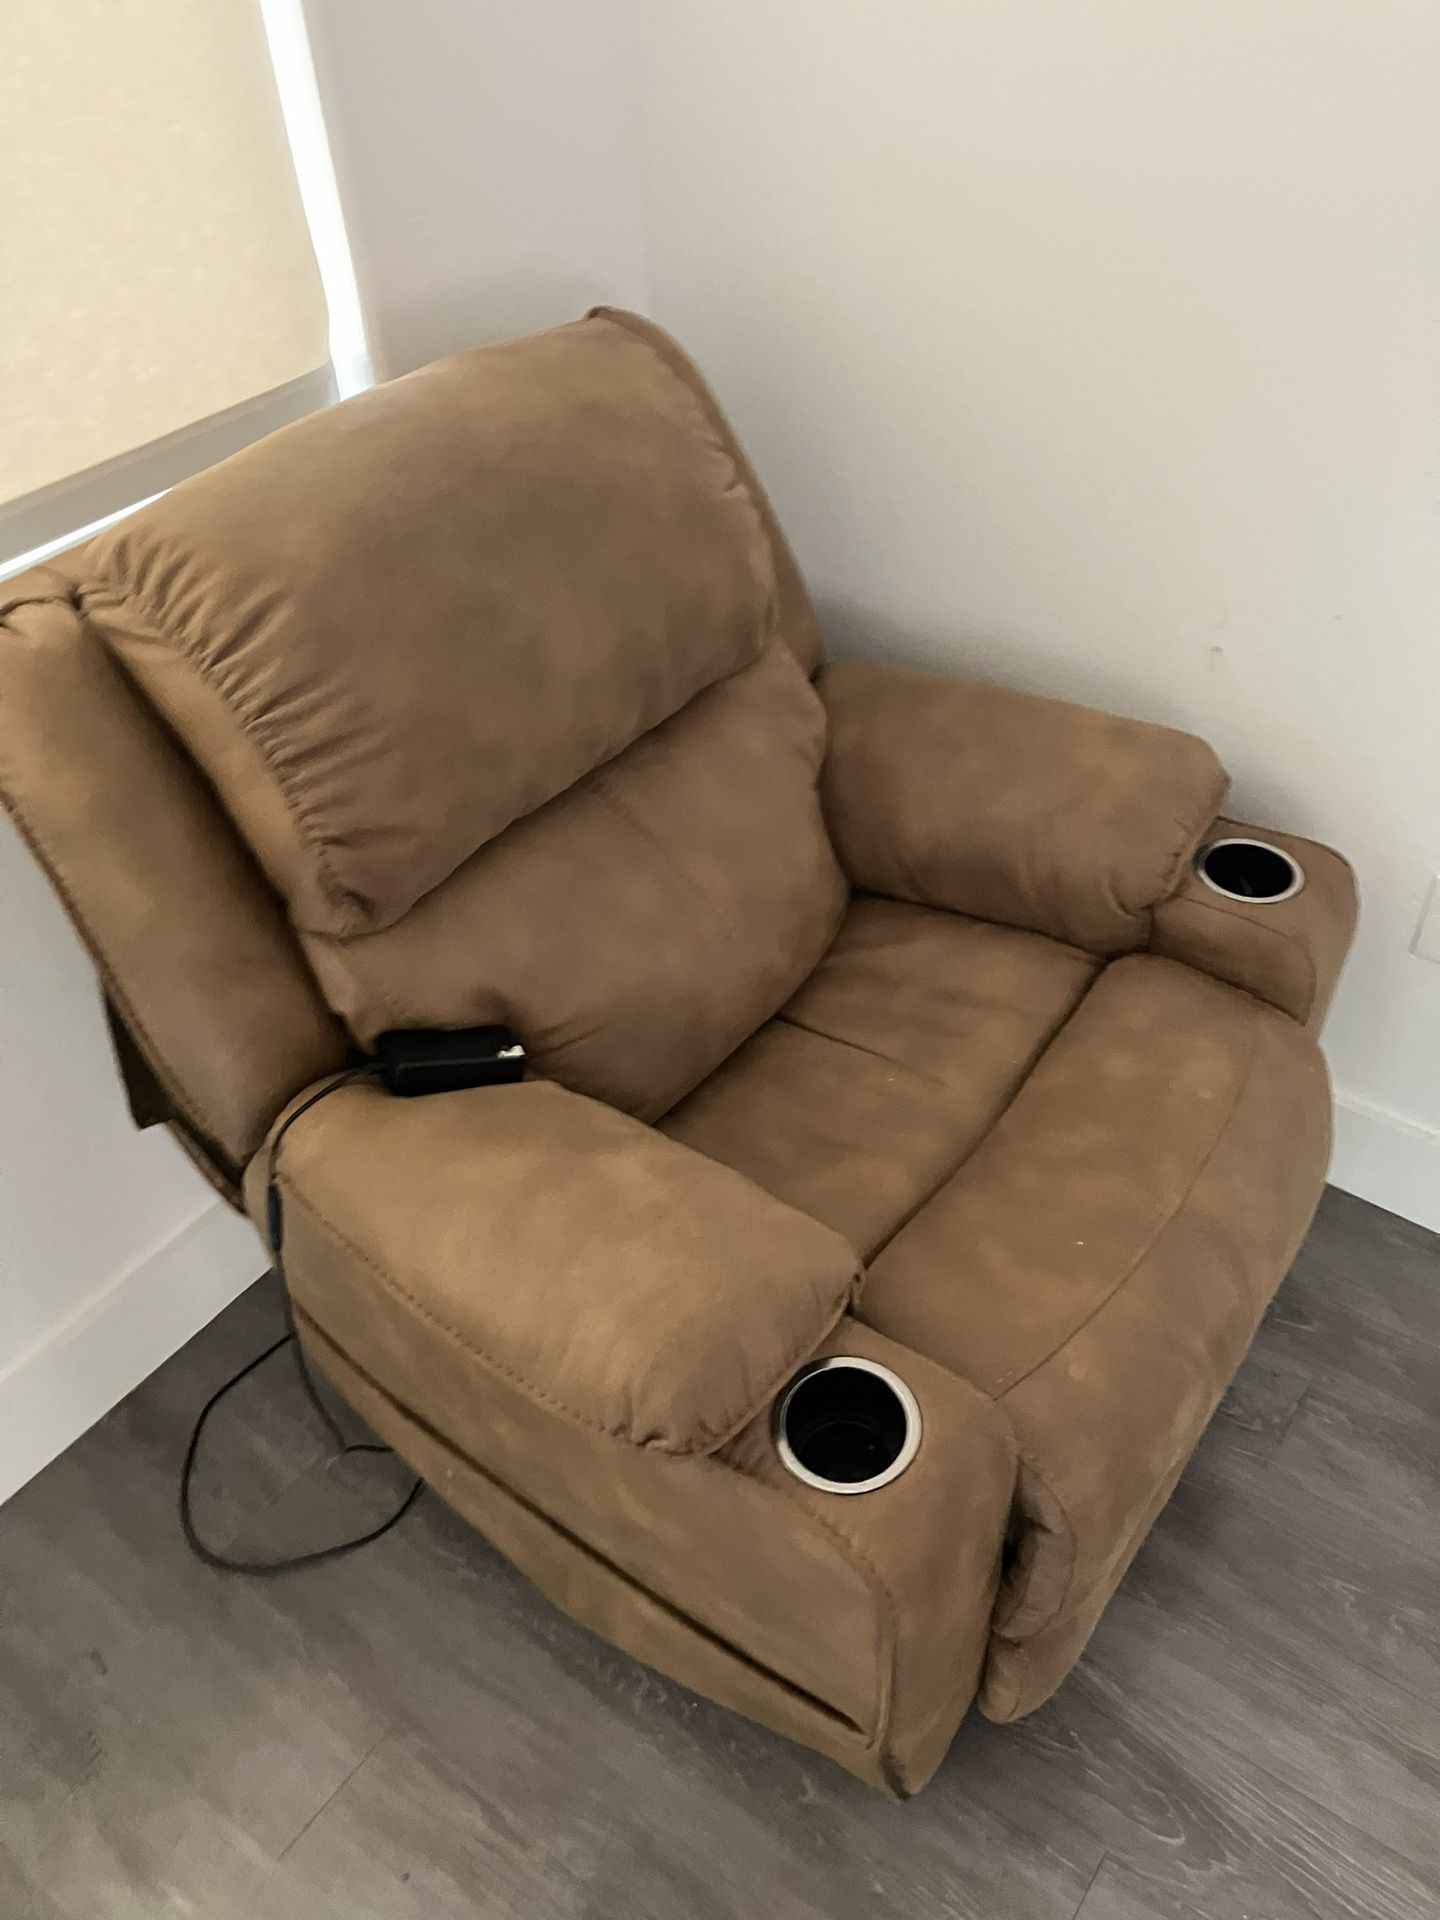 LazBoy Massage Chair